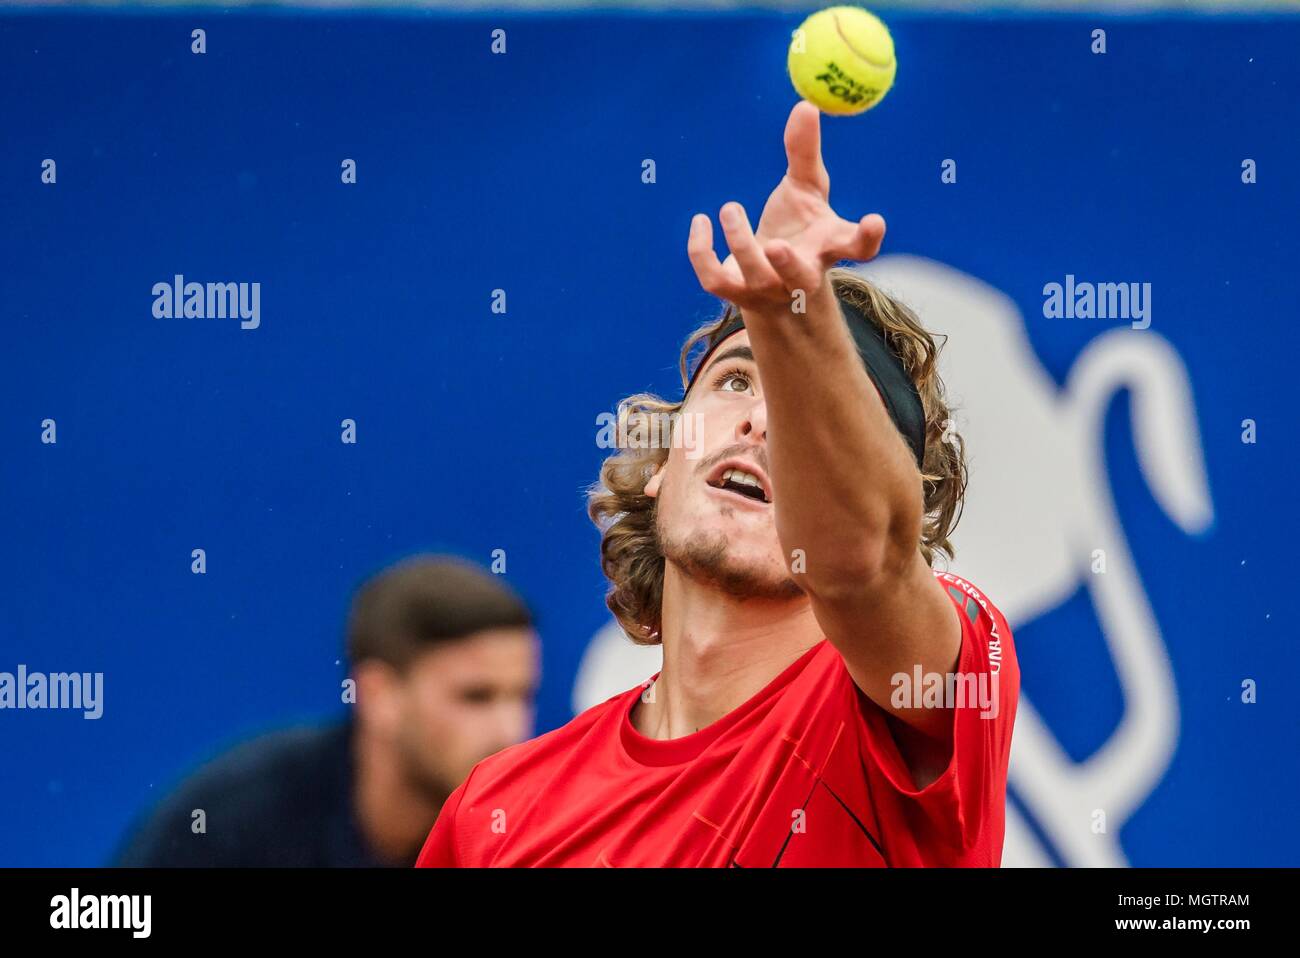 Barcelone, Espagne. 28 avril, 2018 : STEFANOS TSITSIPAS (GRE) sert contre Rafael Nadal (ESP) dans la finale de l'Open de Barcelone Banc Sabadell'. Nadal a gagné 6:2, 6:1 Crédit : Matthias Rickenbach/Alamy Live News Banque D'Images